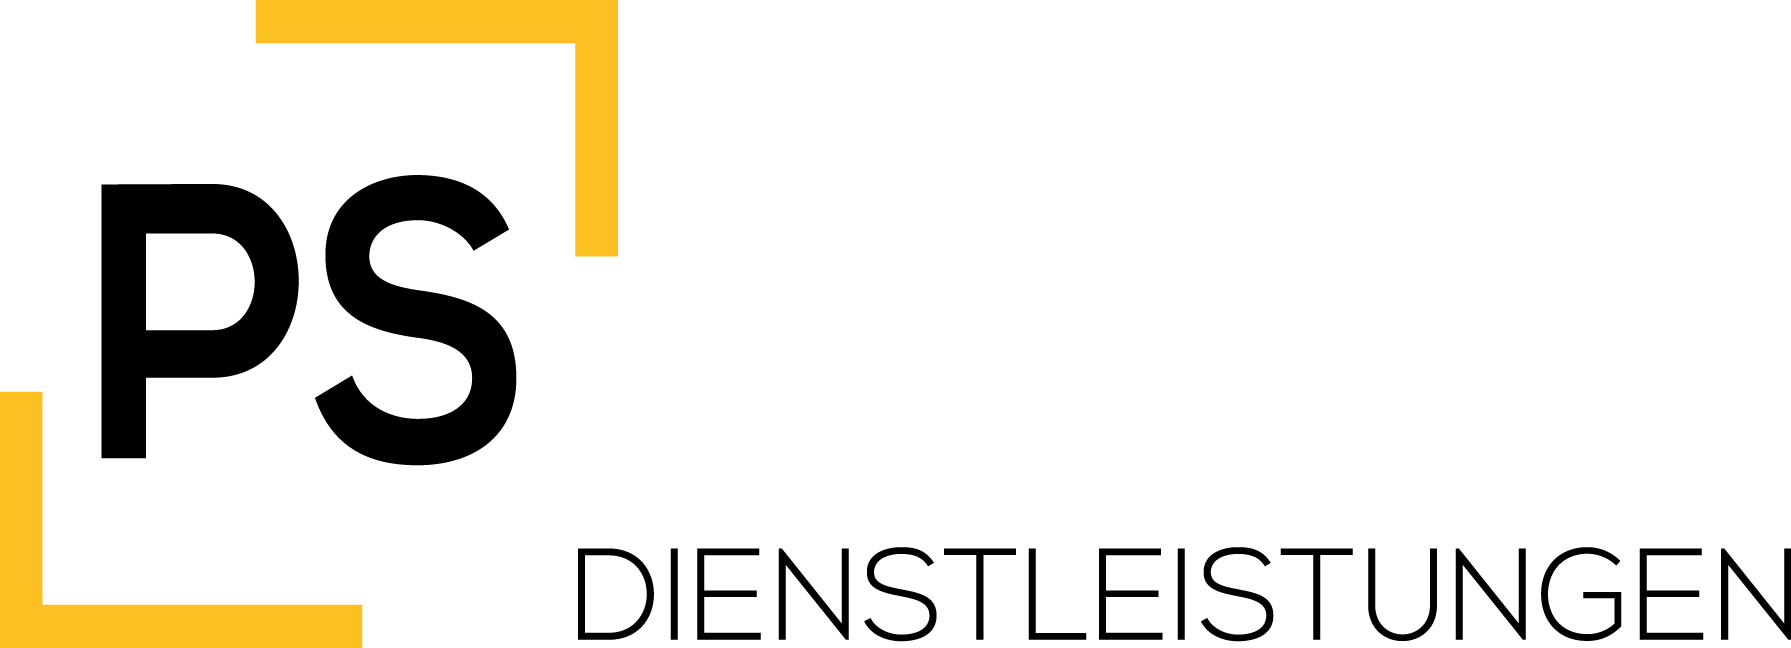 ps-dienstleistungen-logo